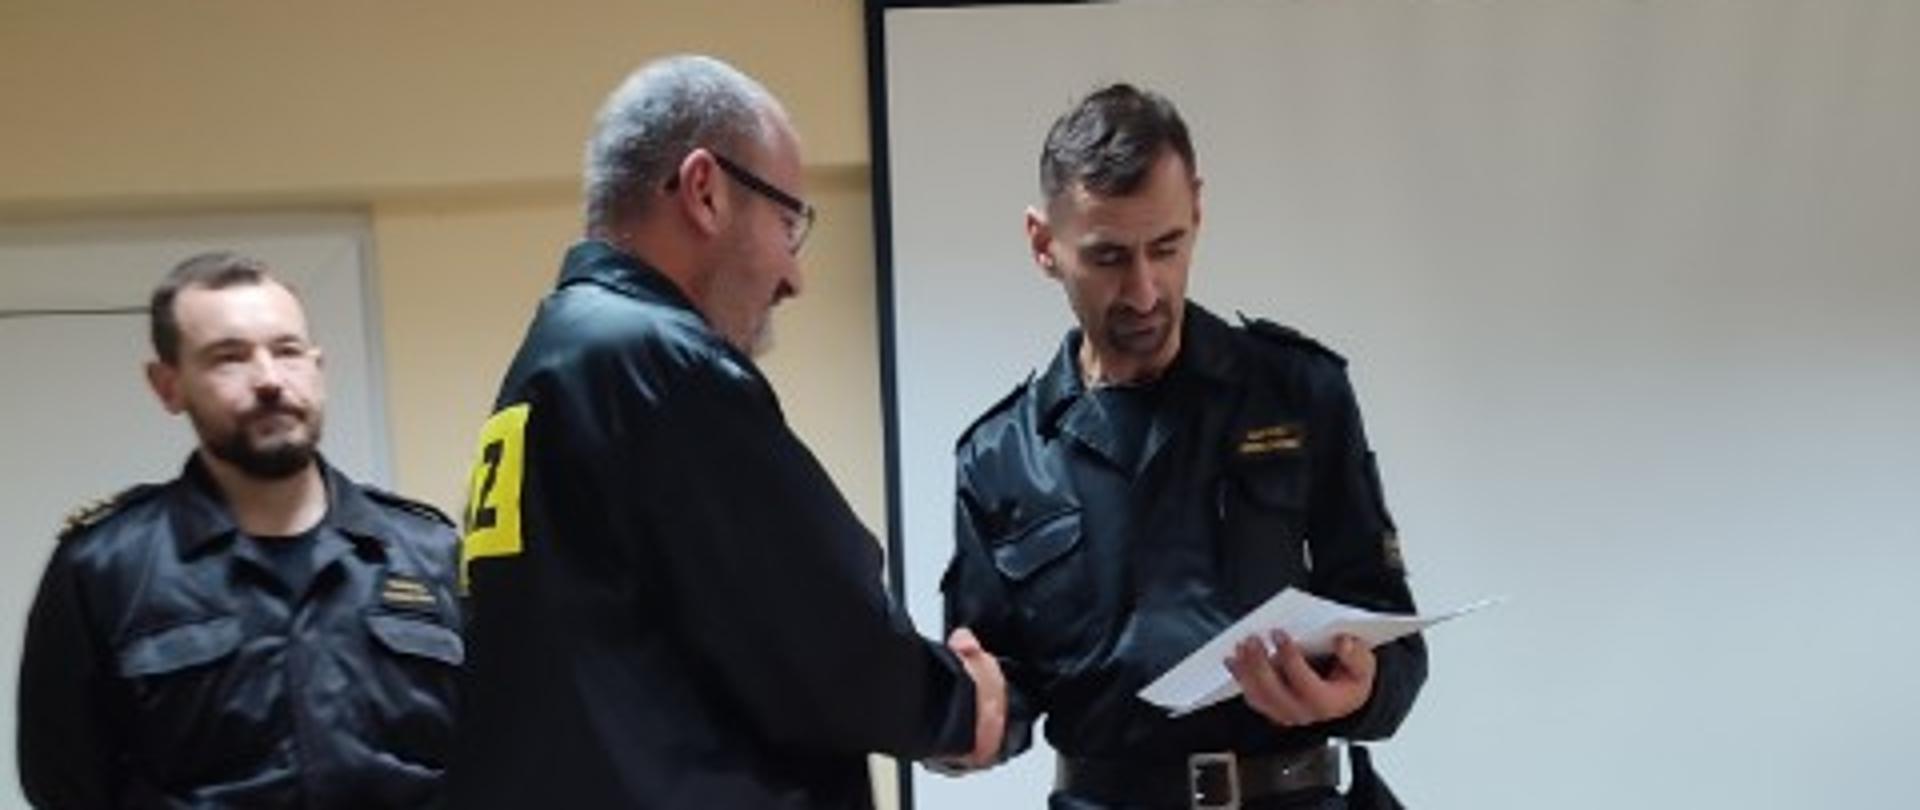 Zdjęcie przedstawia moment wręczenia świadectwa ukończenia szkolenia dla kierujących działaniami ratowniczymi druhowi OSP